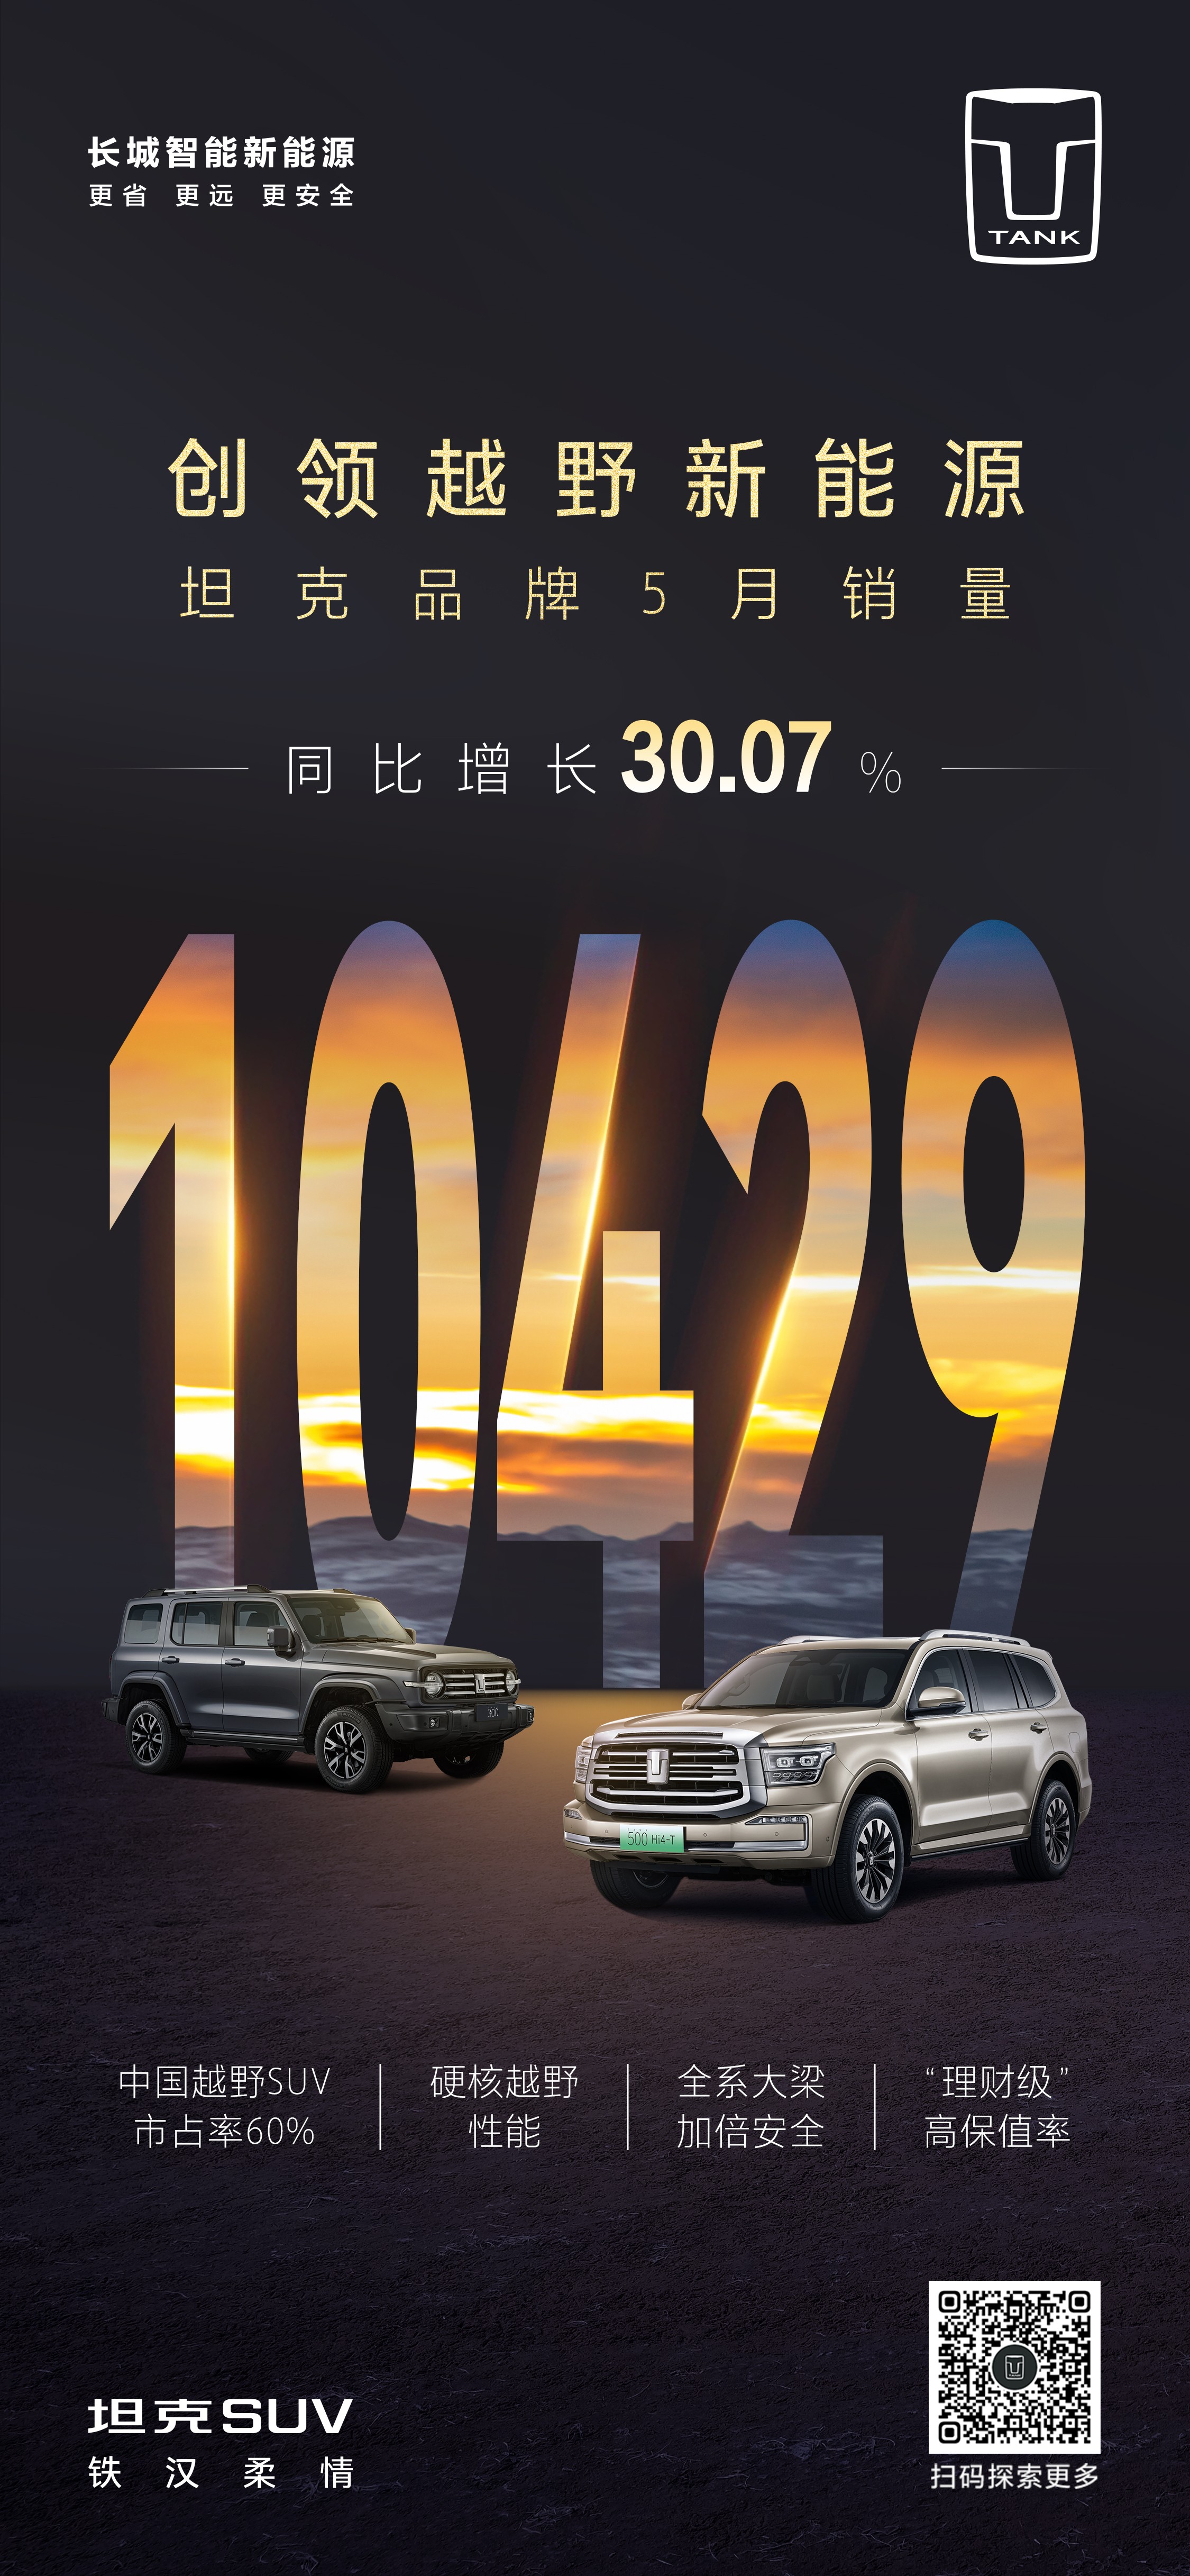 坦克SUV 5月劲销10429辆，蝉联中国硬派越野SUV销量冠军！